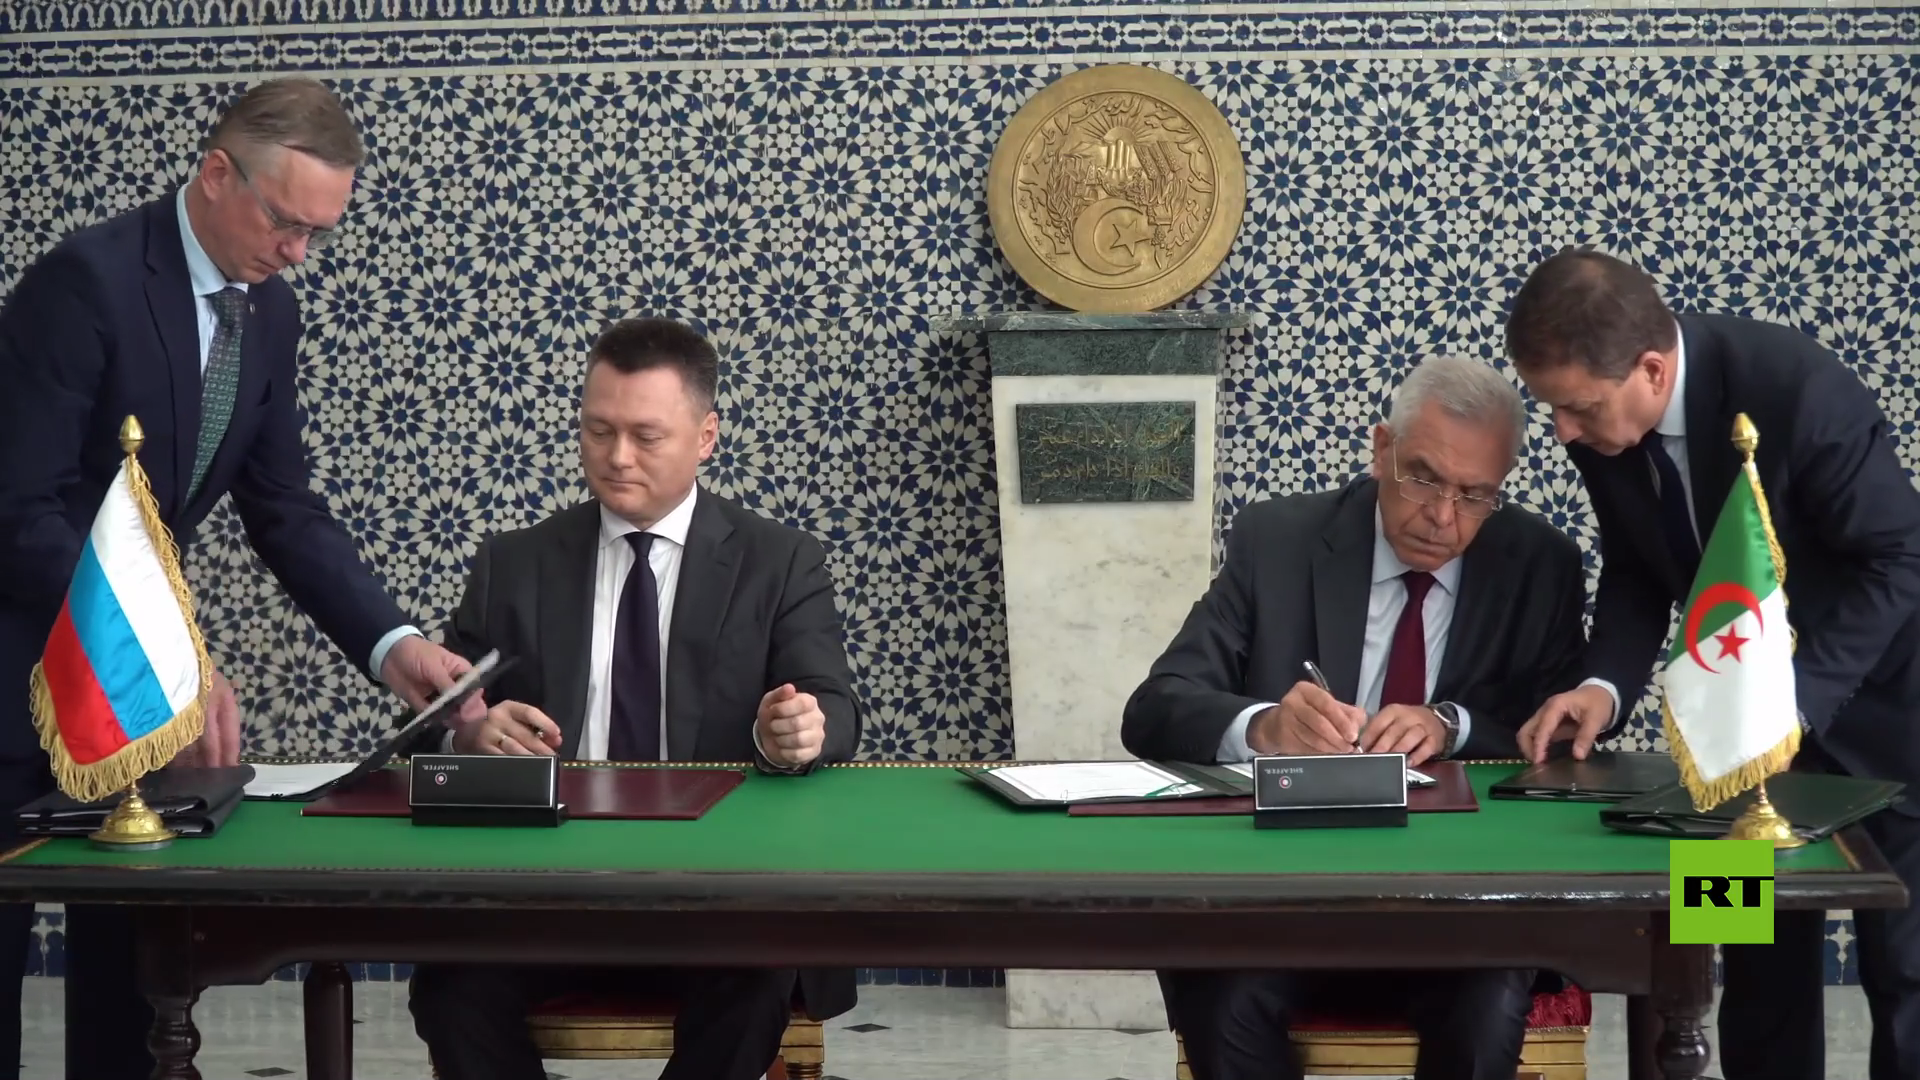 المدعي العام الروسي يوقع في الجزائر على برنامج تعاون في مجال العدل (فيديو)